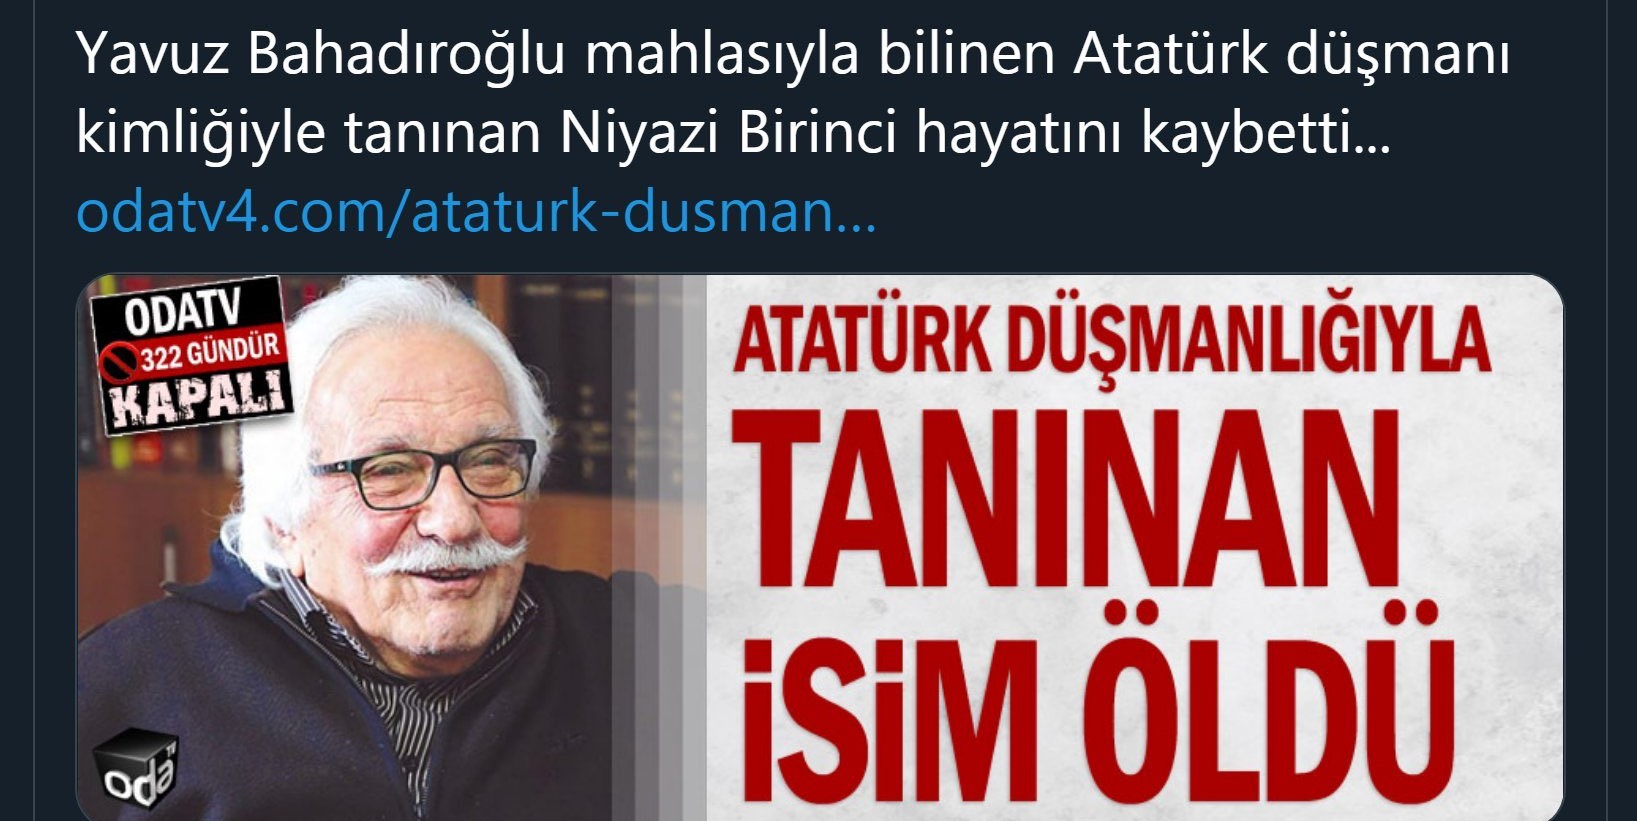 ODA TV Yavuz Bahadıroğlu'nun ölümünü provokatif başlıkla duyurdu